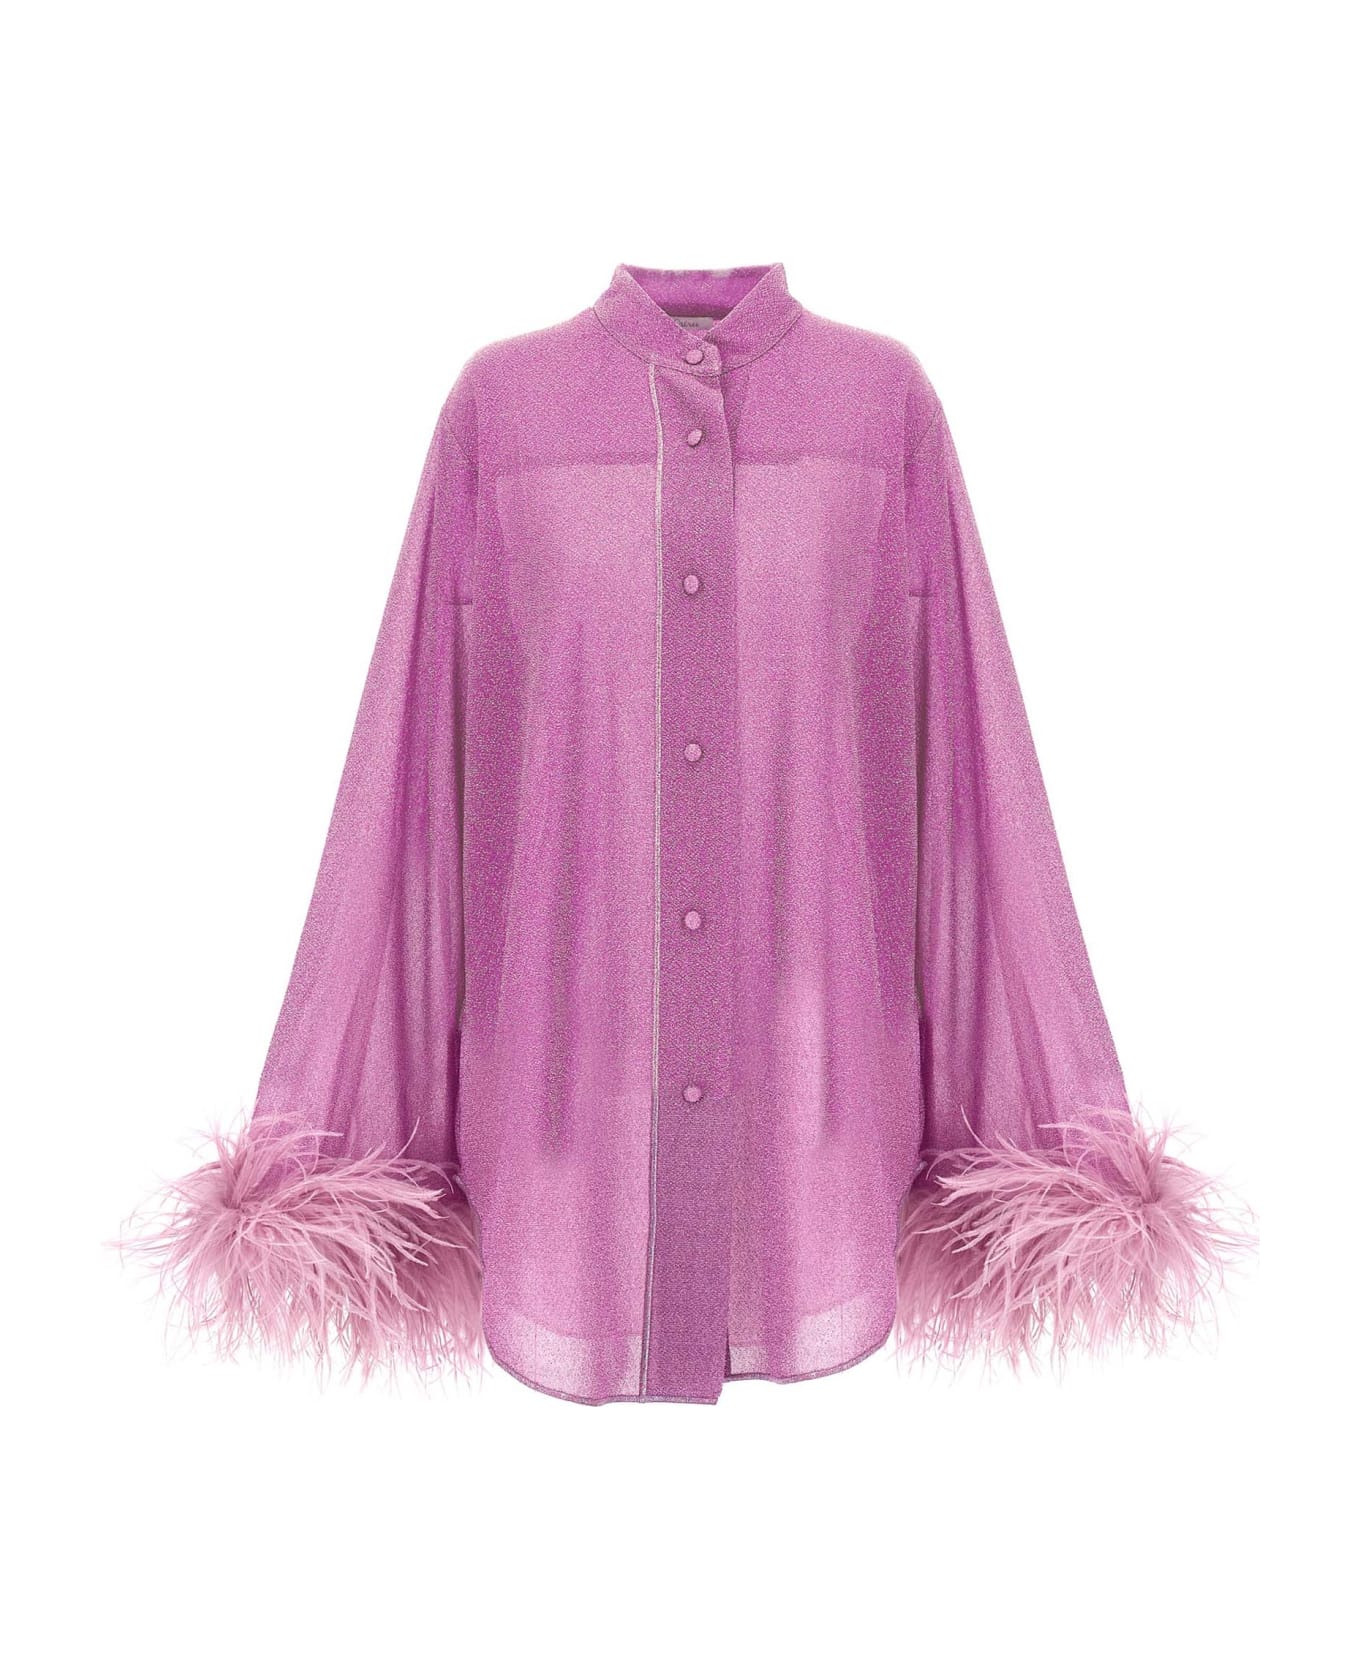 Oseree 'lumiere Plumage' Shirt - Purple ブラウス